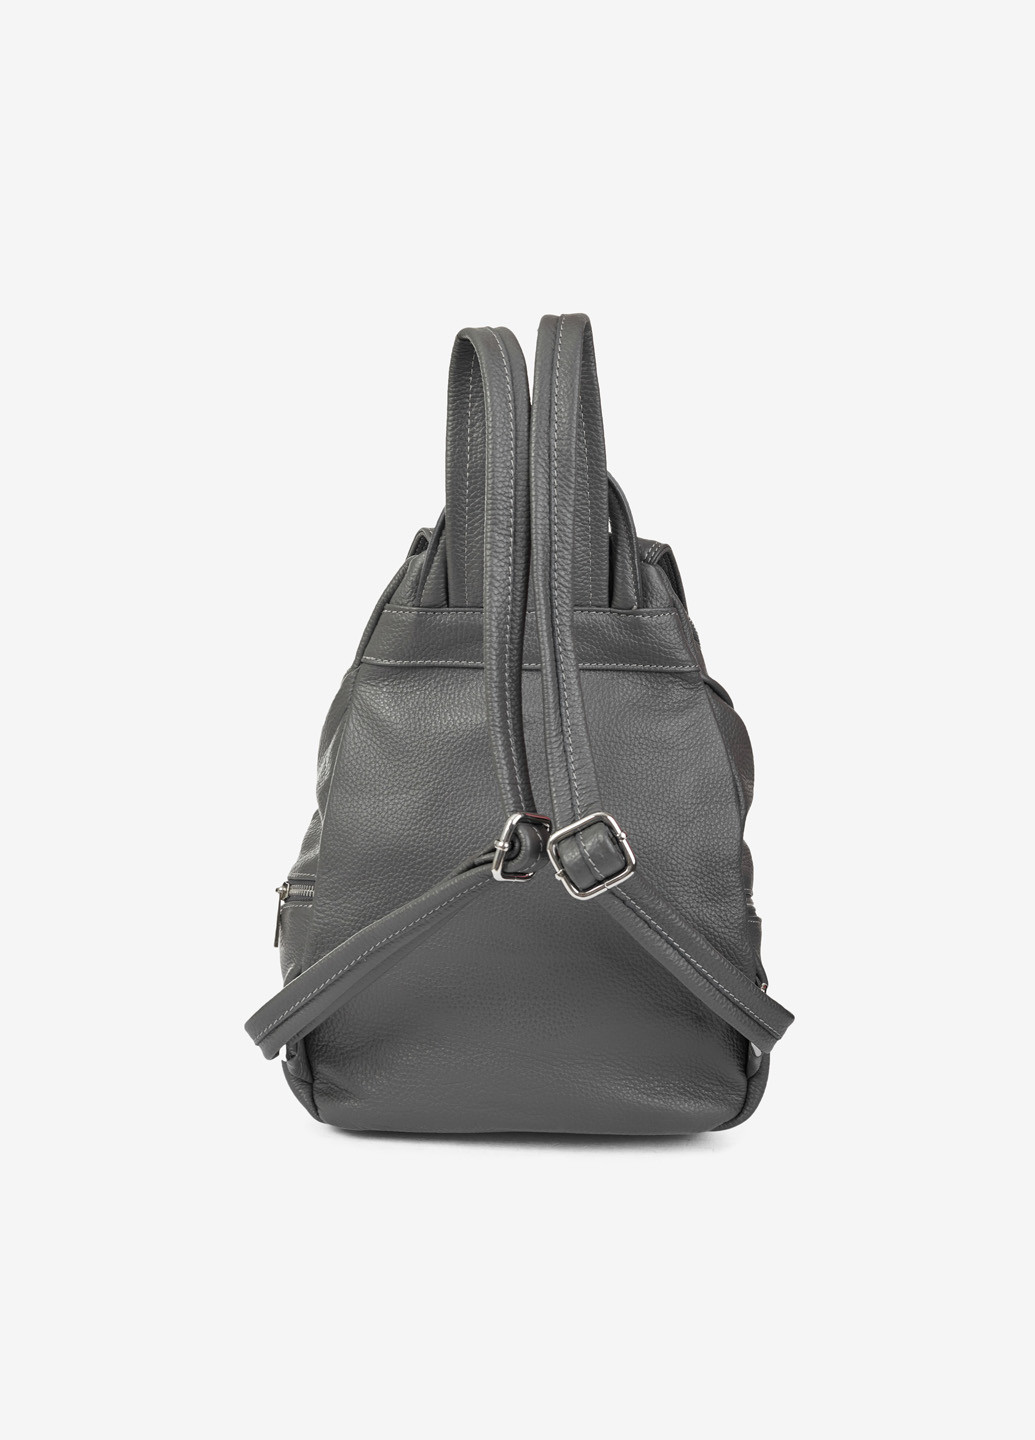 Рюкзак женский кожаный Backpack Regina Notte (254549518)